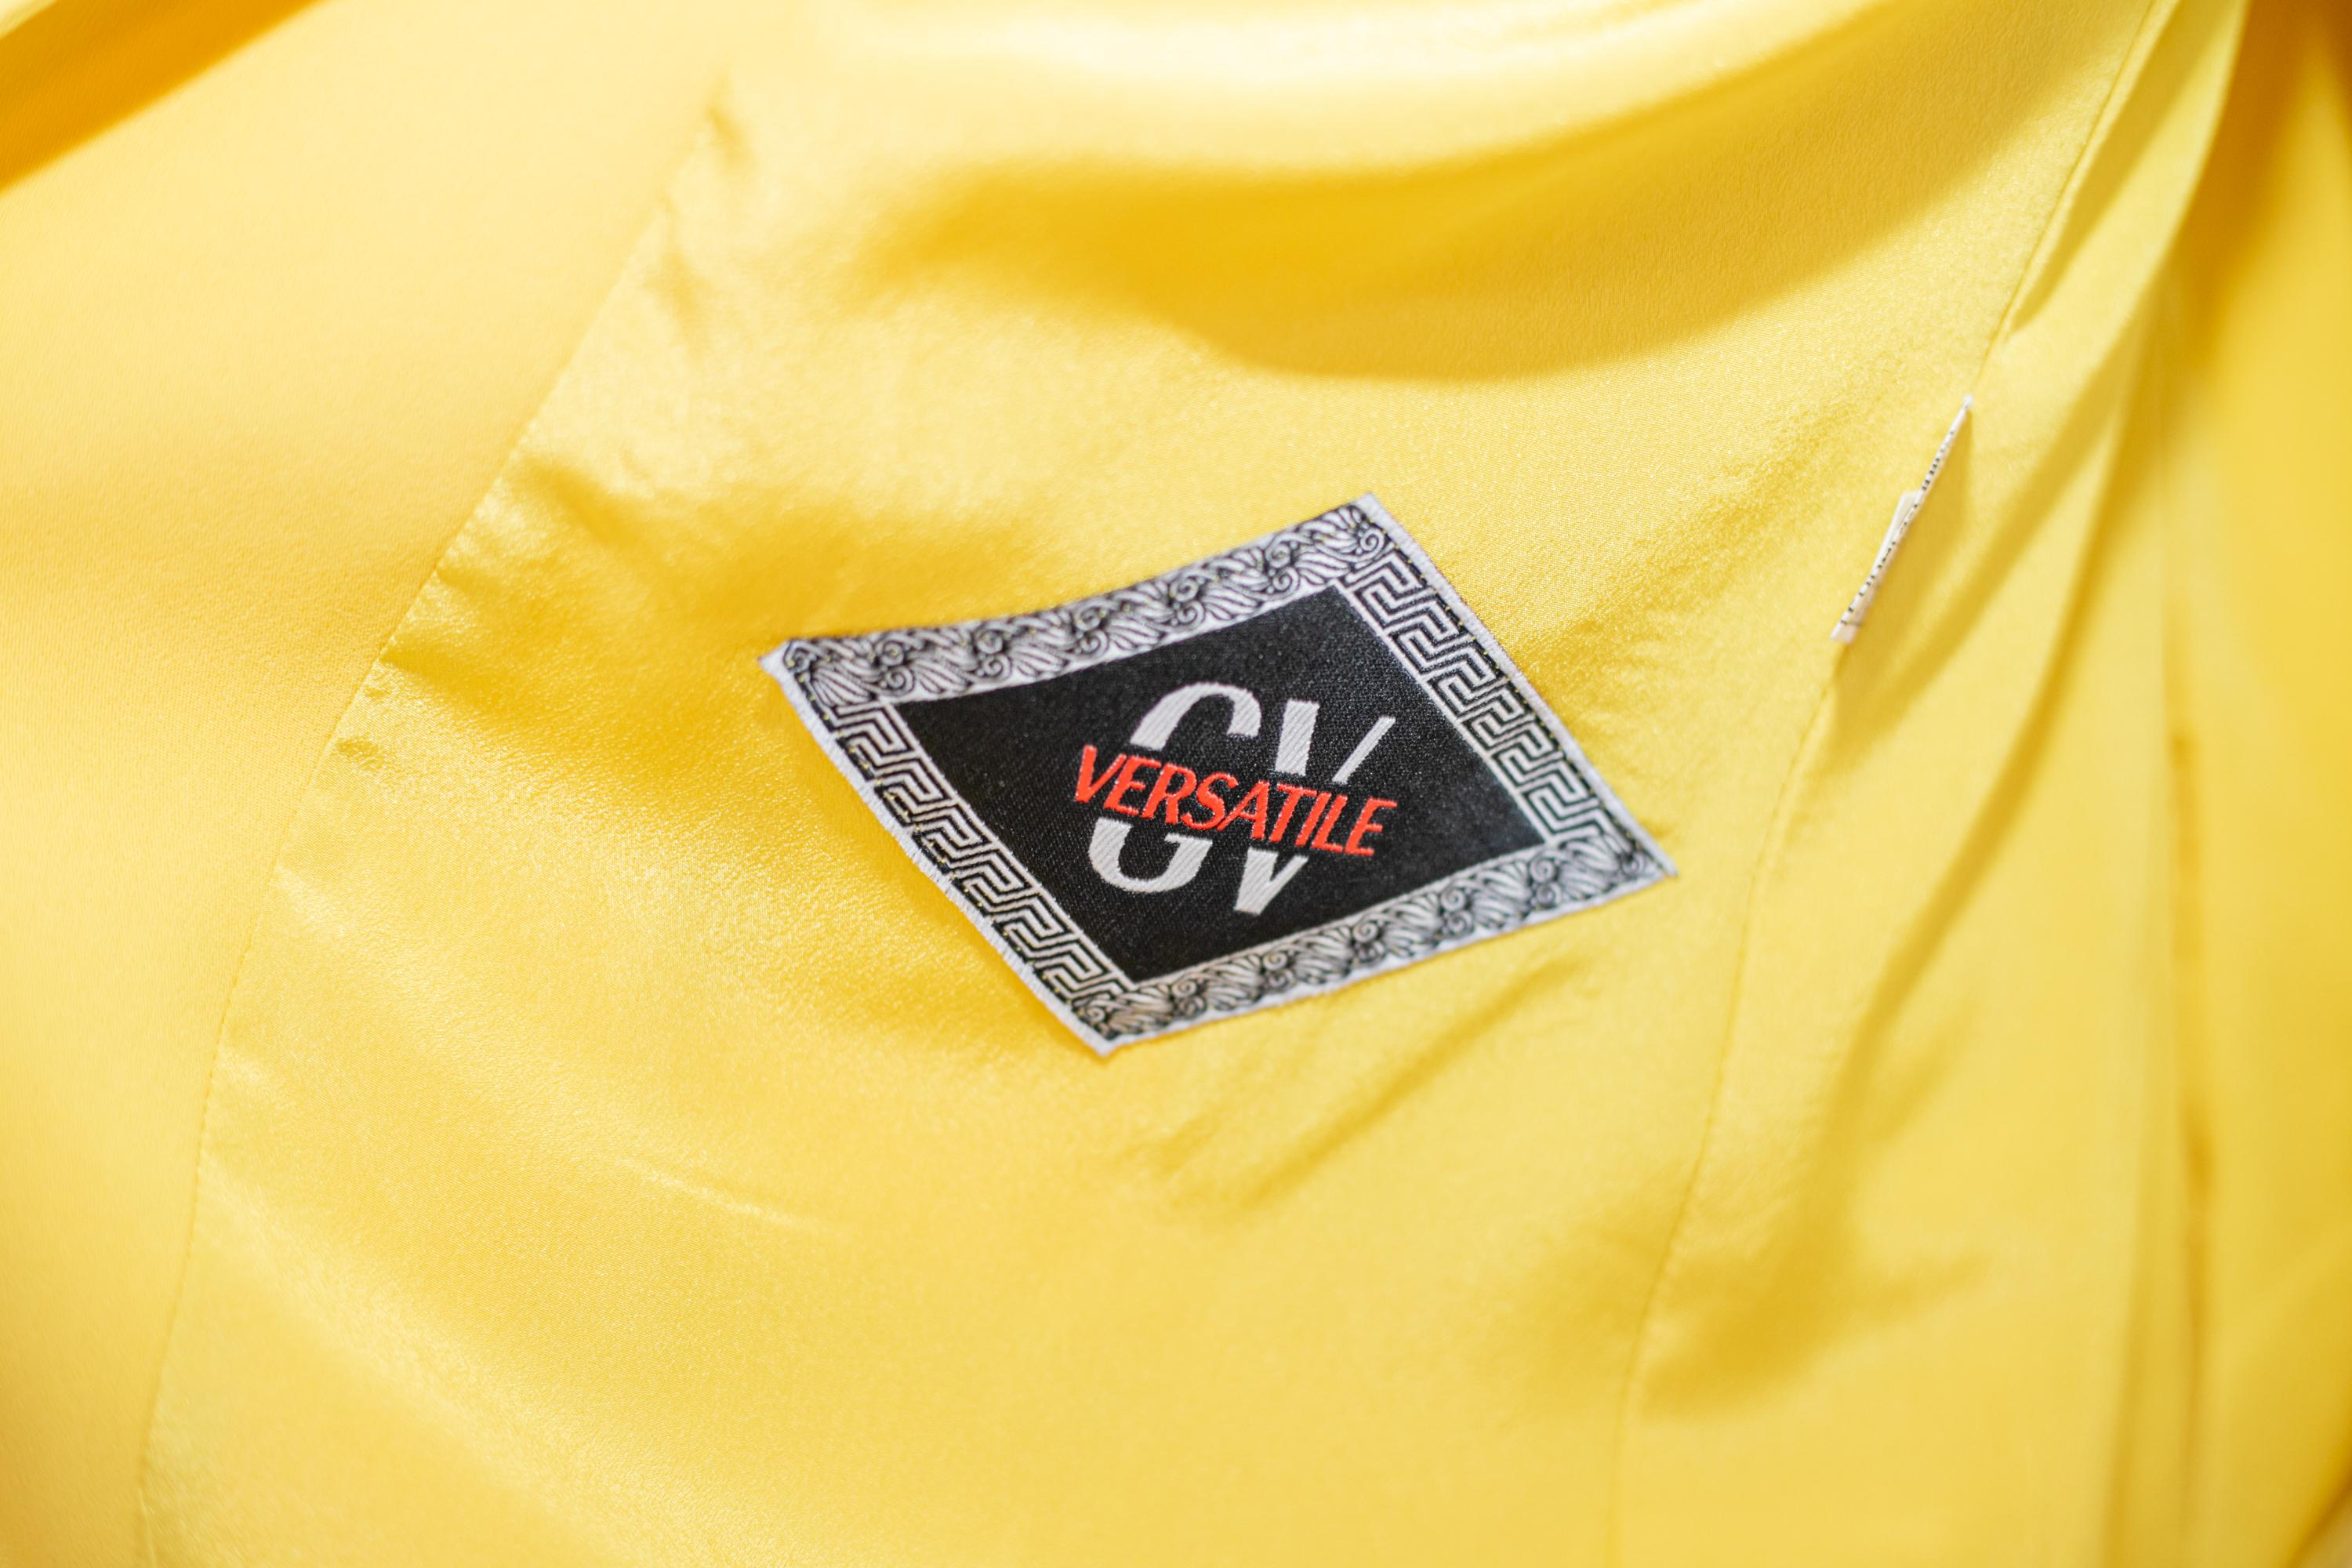 Robe jaune brillant conçue par Gianni Versace dans les années 1970, de belle facture italienne.
L'étiquette originale est présente à l'intérieur.
La robe se compose de deux pièces : la veste et la jupe.
La veste est une veste classique avec une